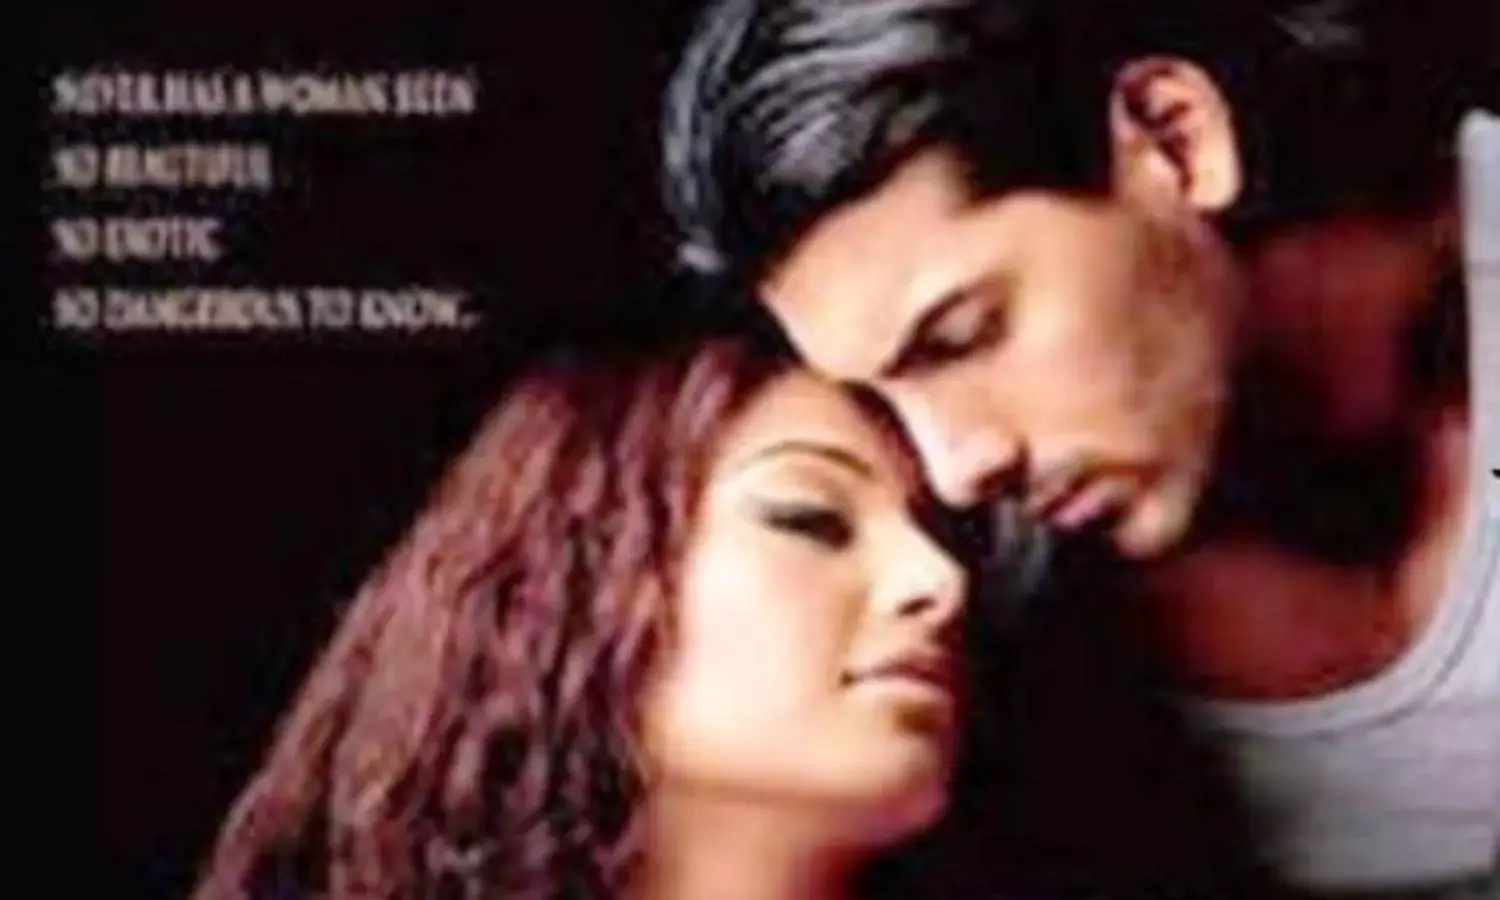 Sex Video In Hema Malini - Adultery in Indian Cinema